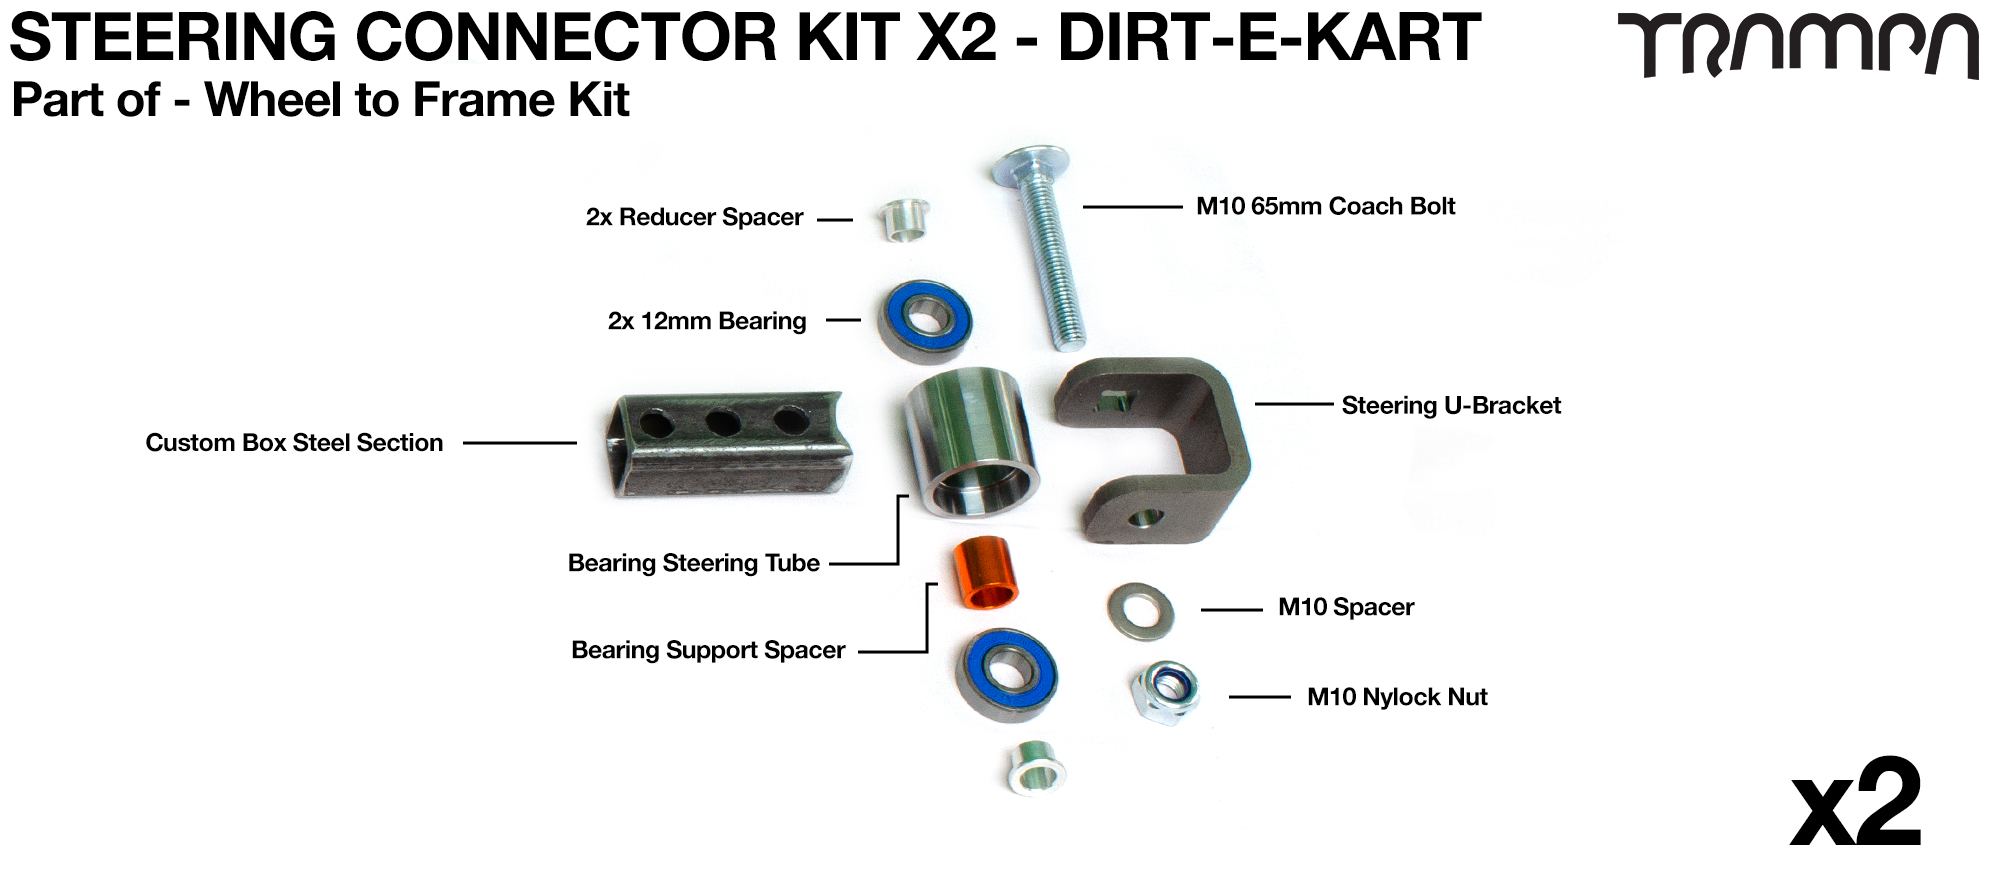 DIRT-E-KART Steering Knuckle Kit x2